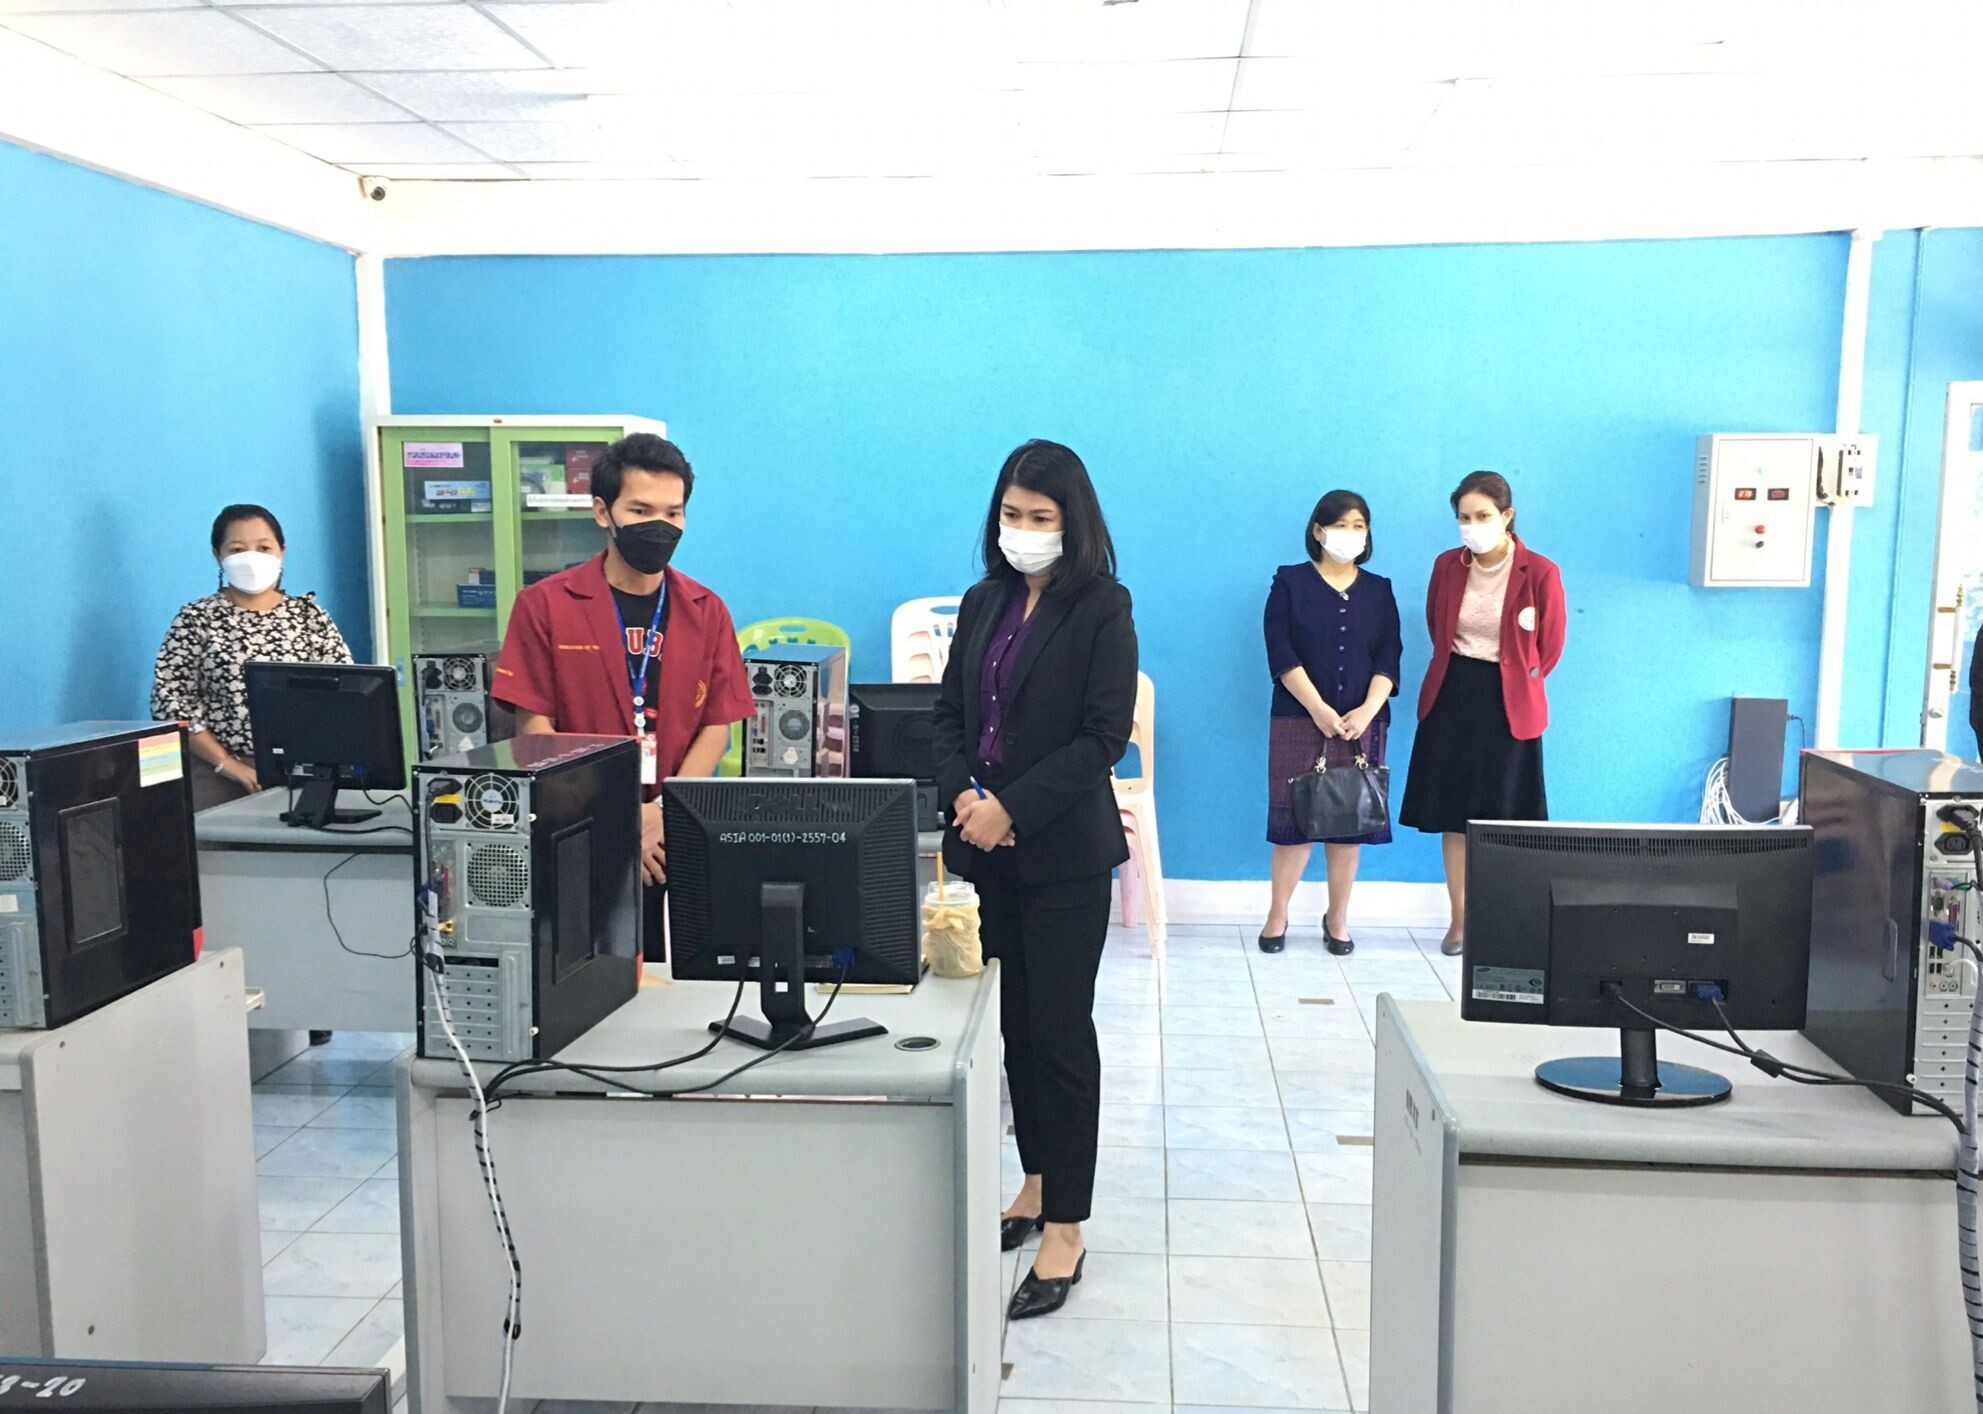 21 ธ.ค. 2564สนพ.ลพบุรี ตรวจความพร้อมศูนย์ทดสอบมาตรฐานฝีมือแรงงาน วิทยาลัยเทคโนโลยีเอเชียลพบุรี